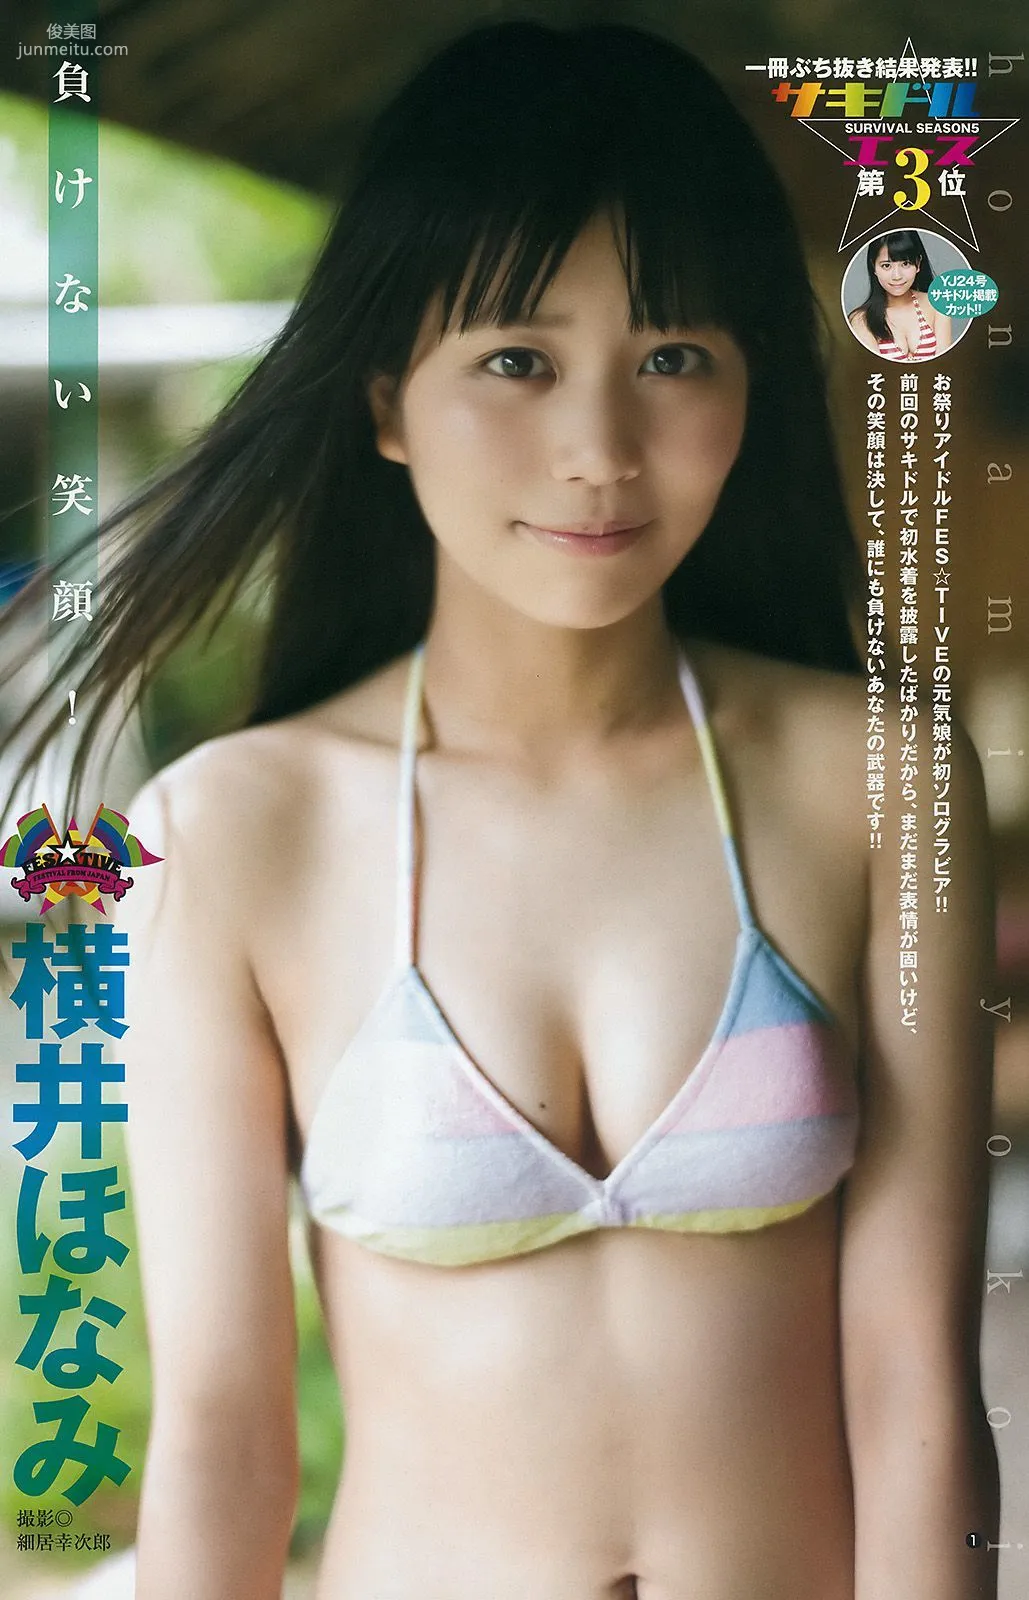 根本凪 横井ほなみ 荒川優那 [Weekly Young Jump] 2016年No.36 写真杂志8